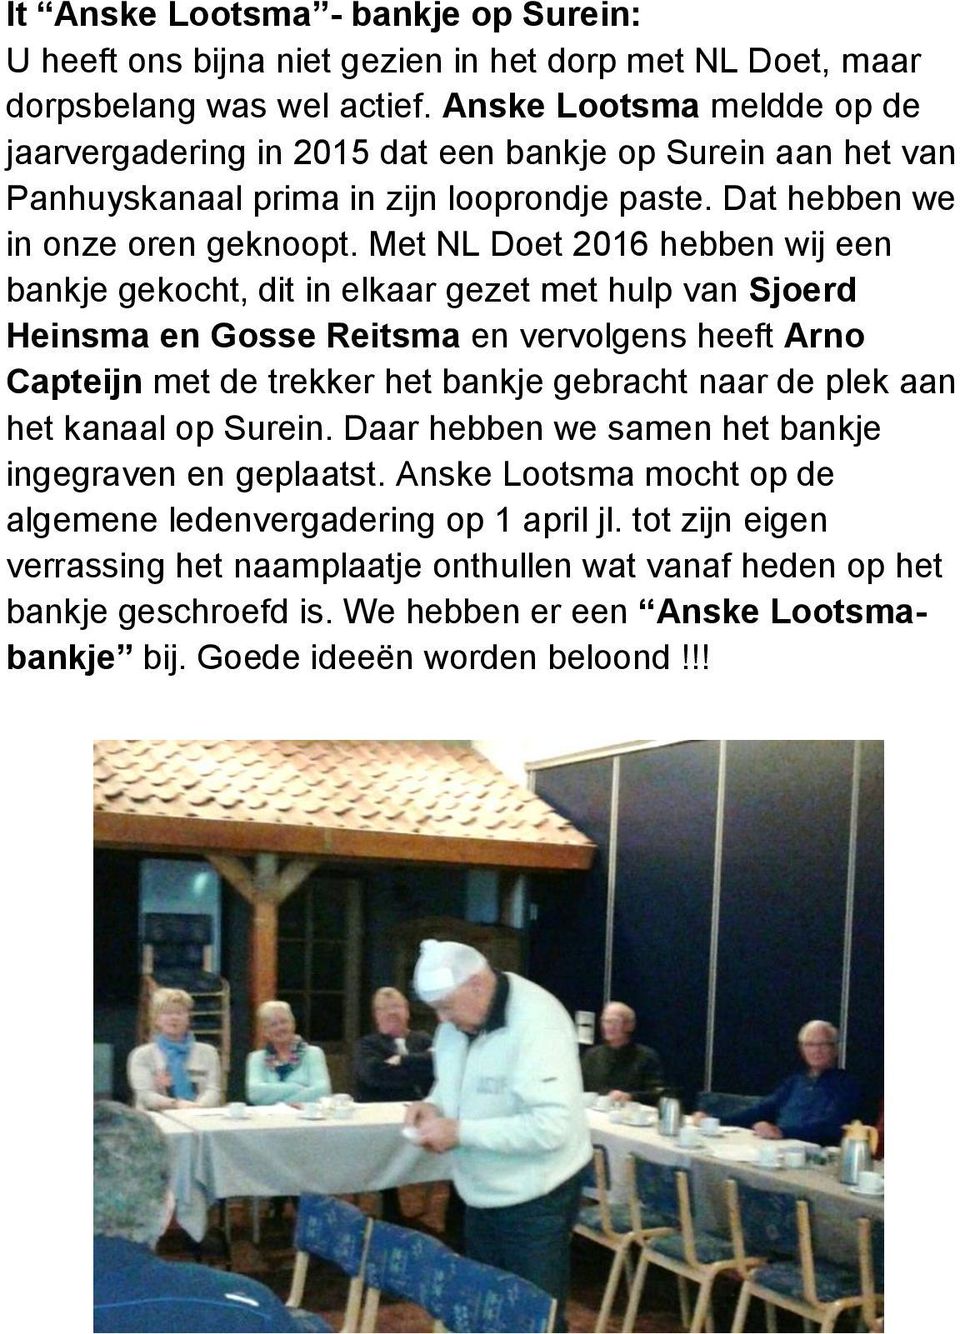 Met NL Doet 2016 hebben wij een bankje gekocht, dit in elkaar gezet met hulp van Sjoerd Heinsma en Gosse Reitsma en vervolgens heeft Arno Capteijn met de trekker het bankje gebracht naar de plek aan